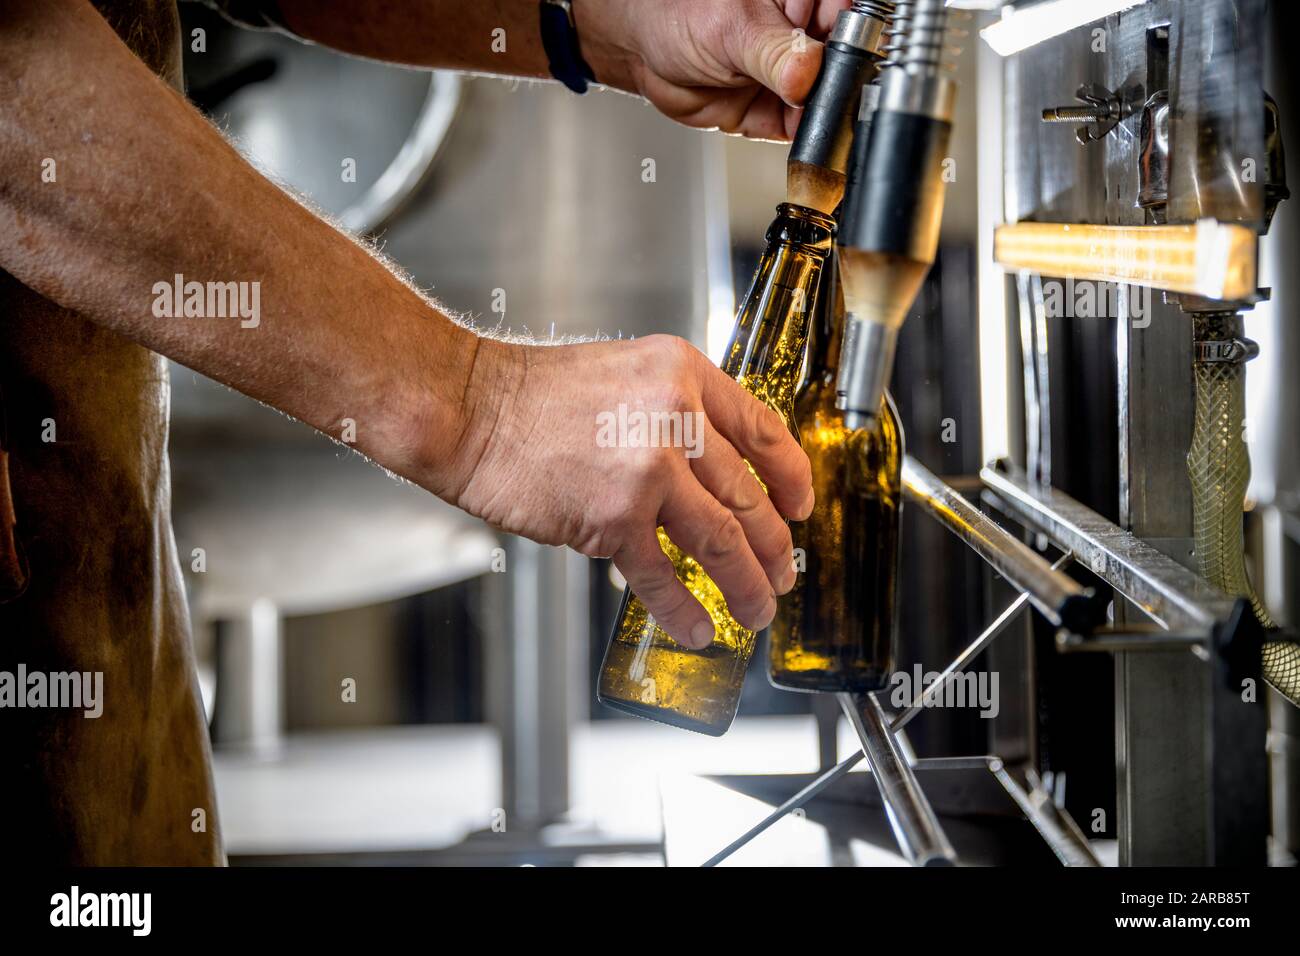 brewer botteling artisanal beer Stock Photo